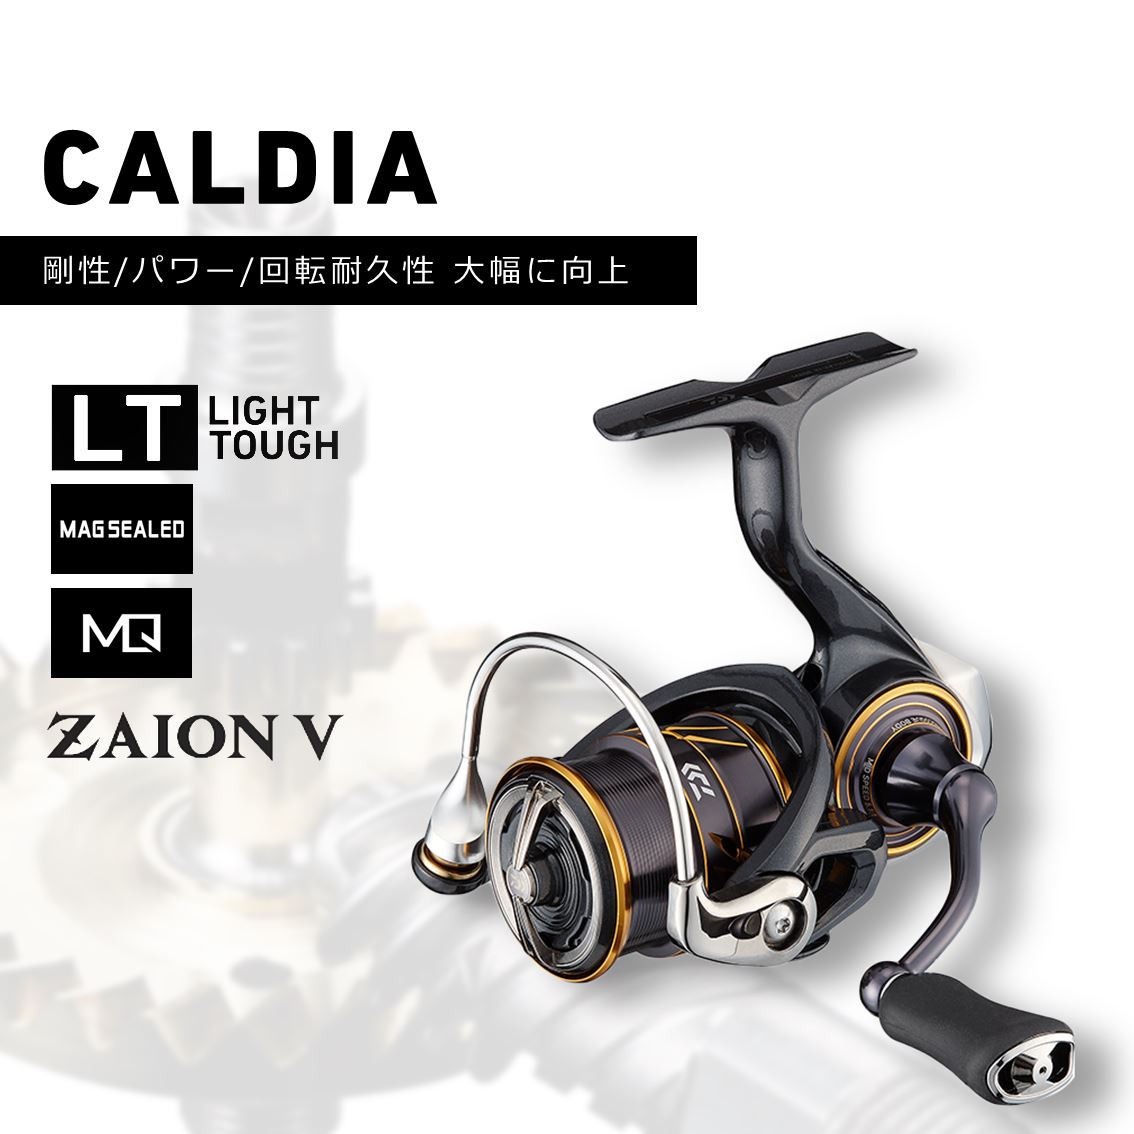 21カルディア CF LT 1000S 2022高い素材 51.0%OFF sandorobotics.com